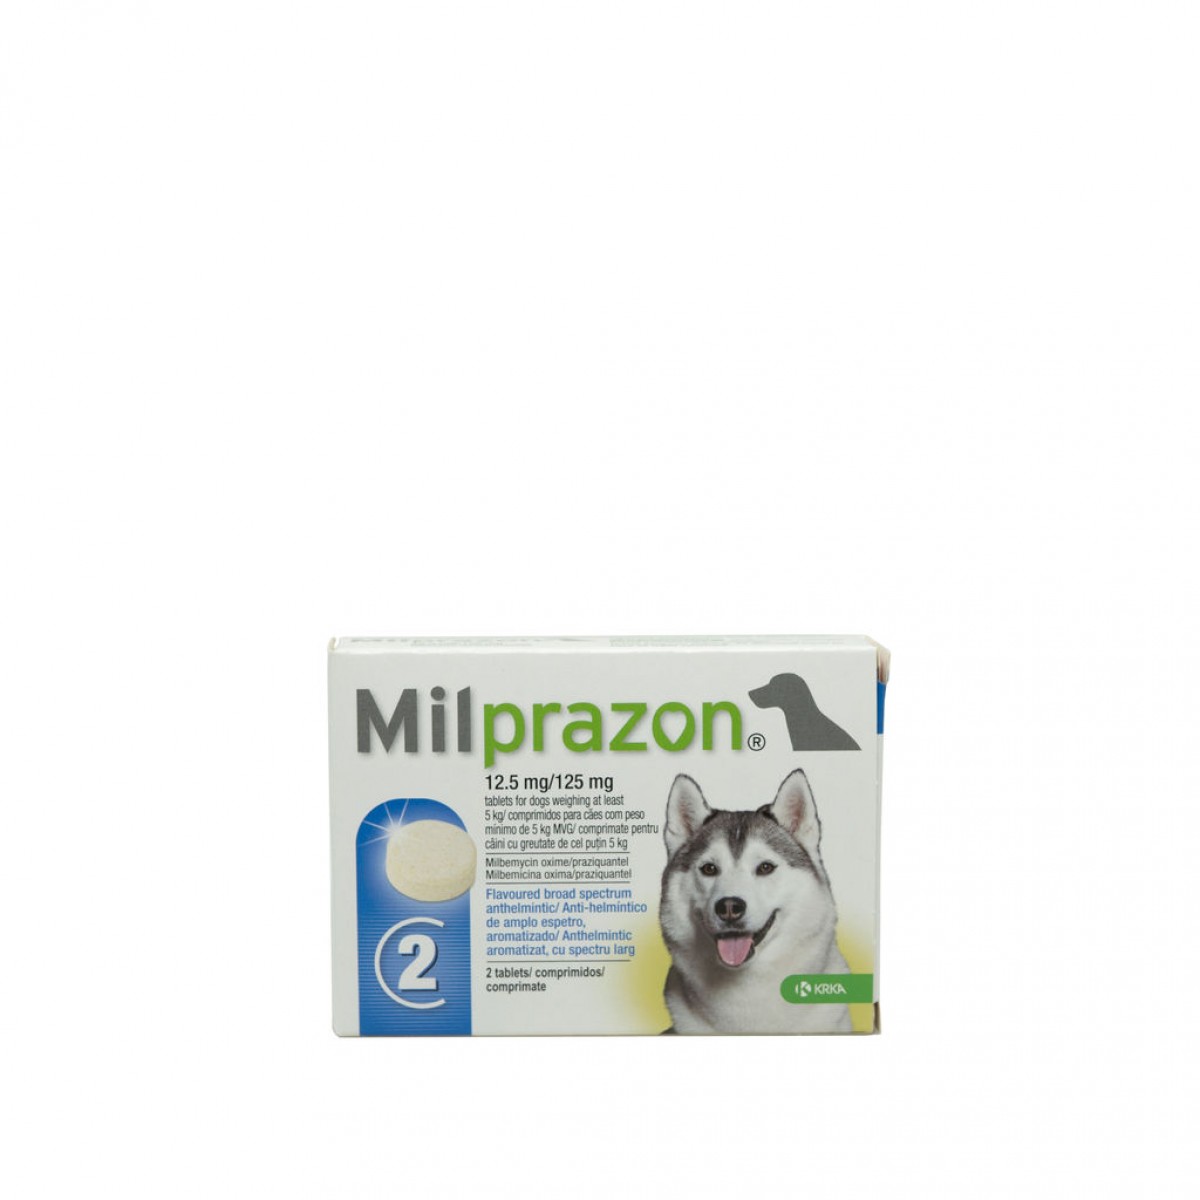 Milprazon pentru câini de 5 - 25kg, 2 tablete antiparazitare, Antiparazitare interne, Antiparazitare, Câini 